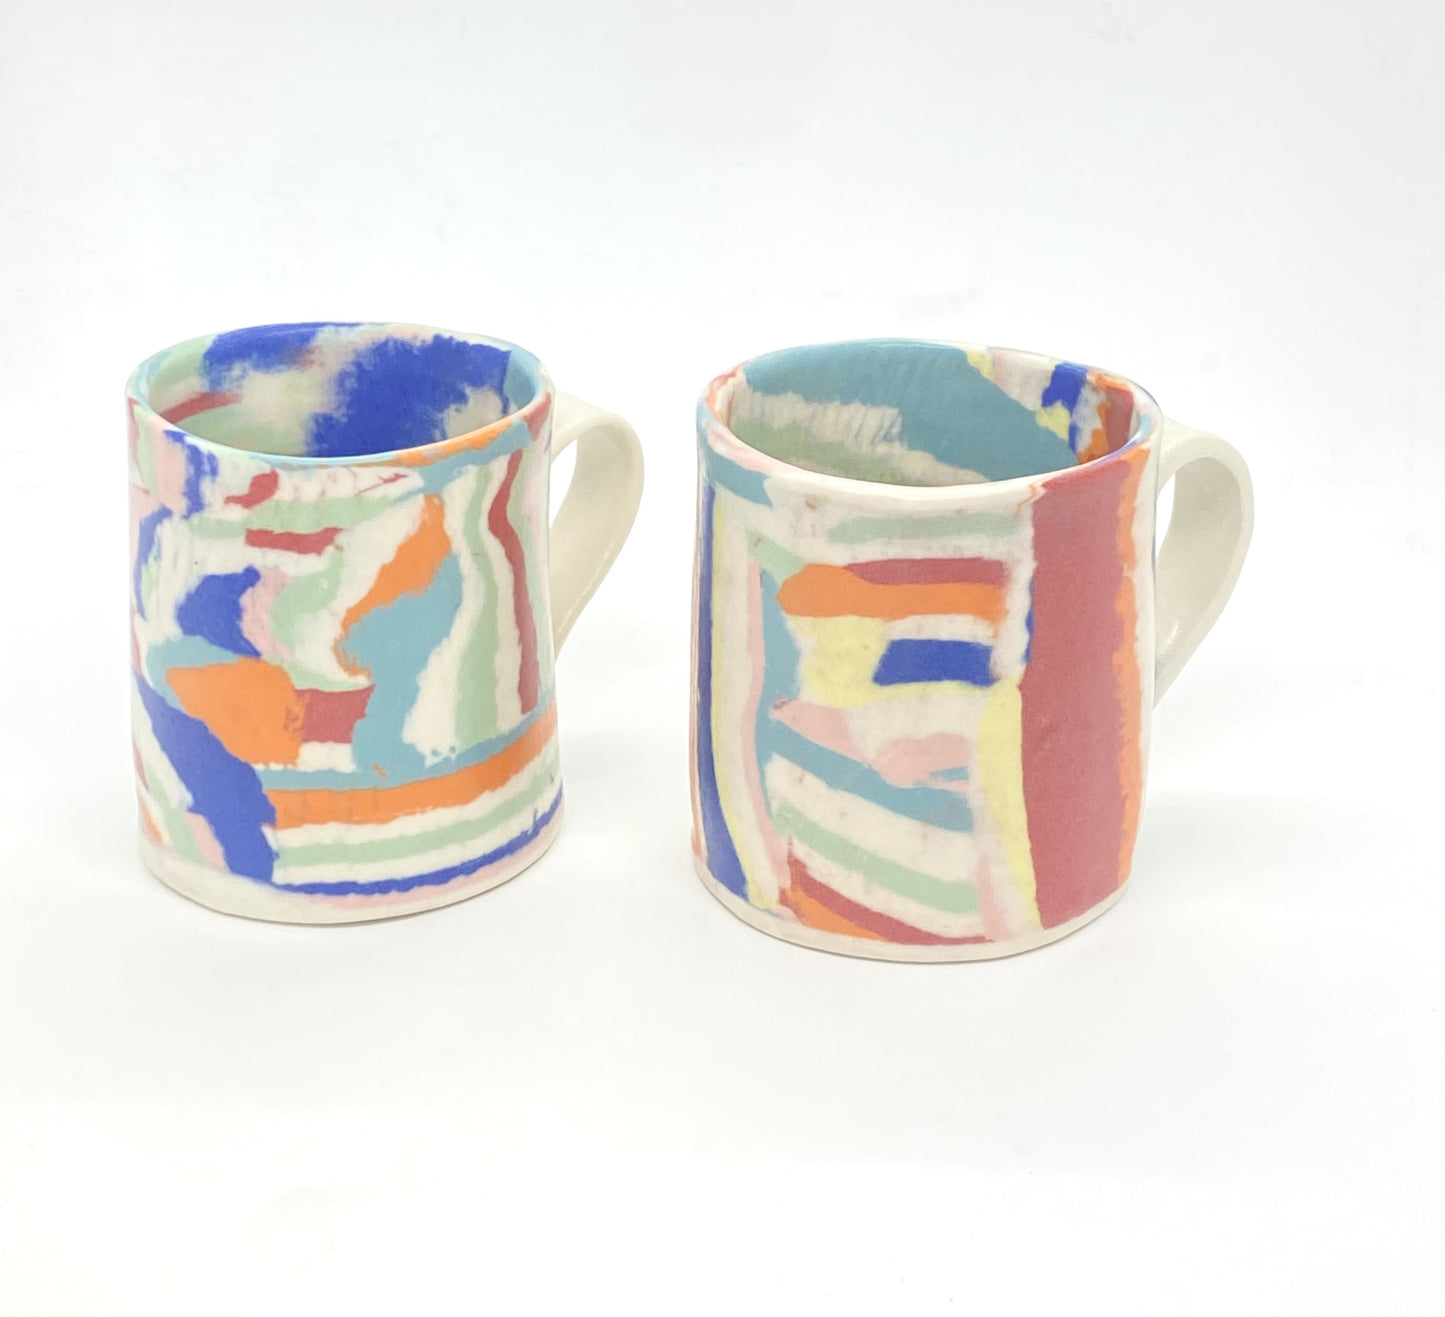 Ceramic Nerikomi Mug - Large - Rainbow (Mixed)